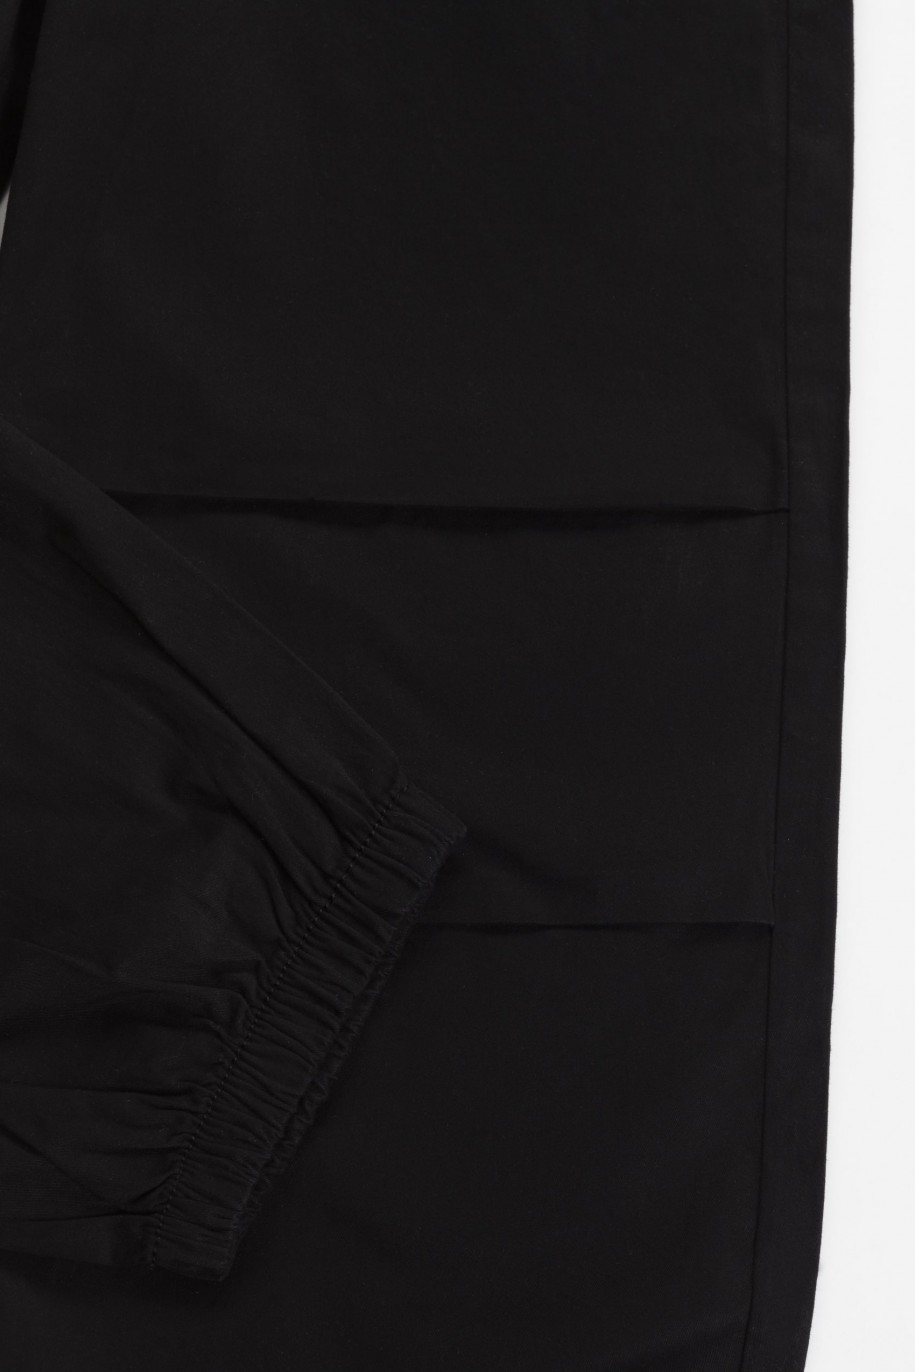 Czarne spodnie typu parachute z zaszewkami na nogawkach - 46051